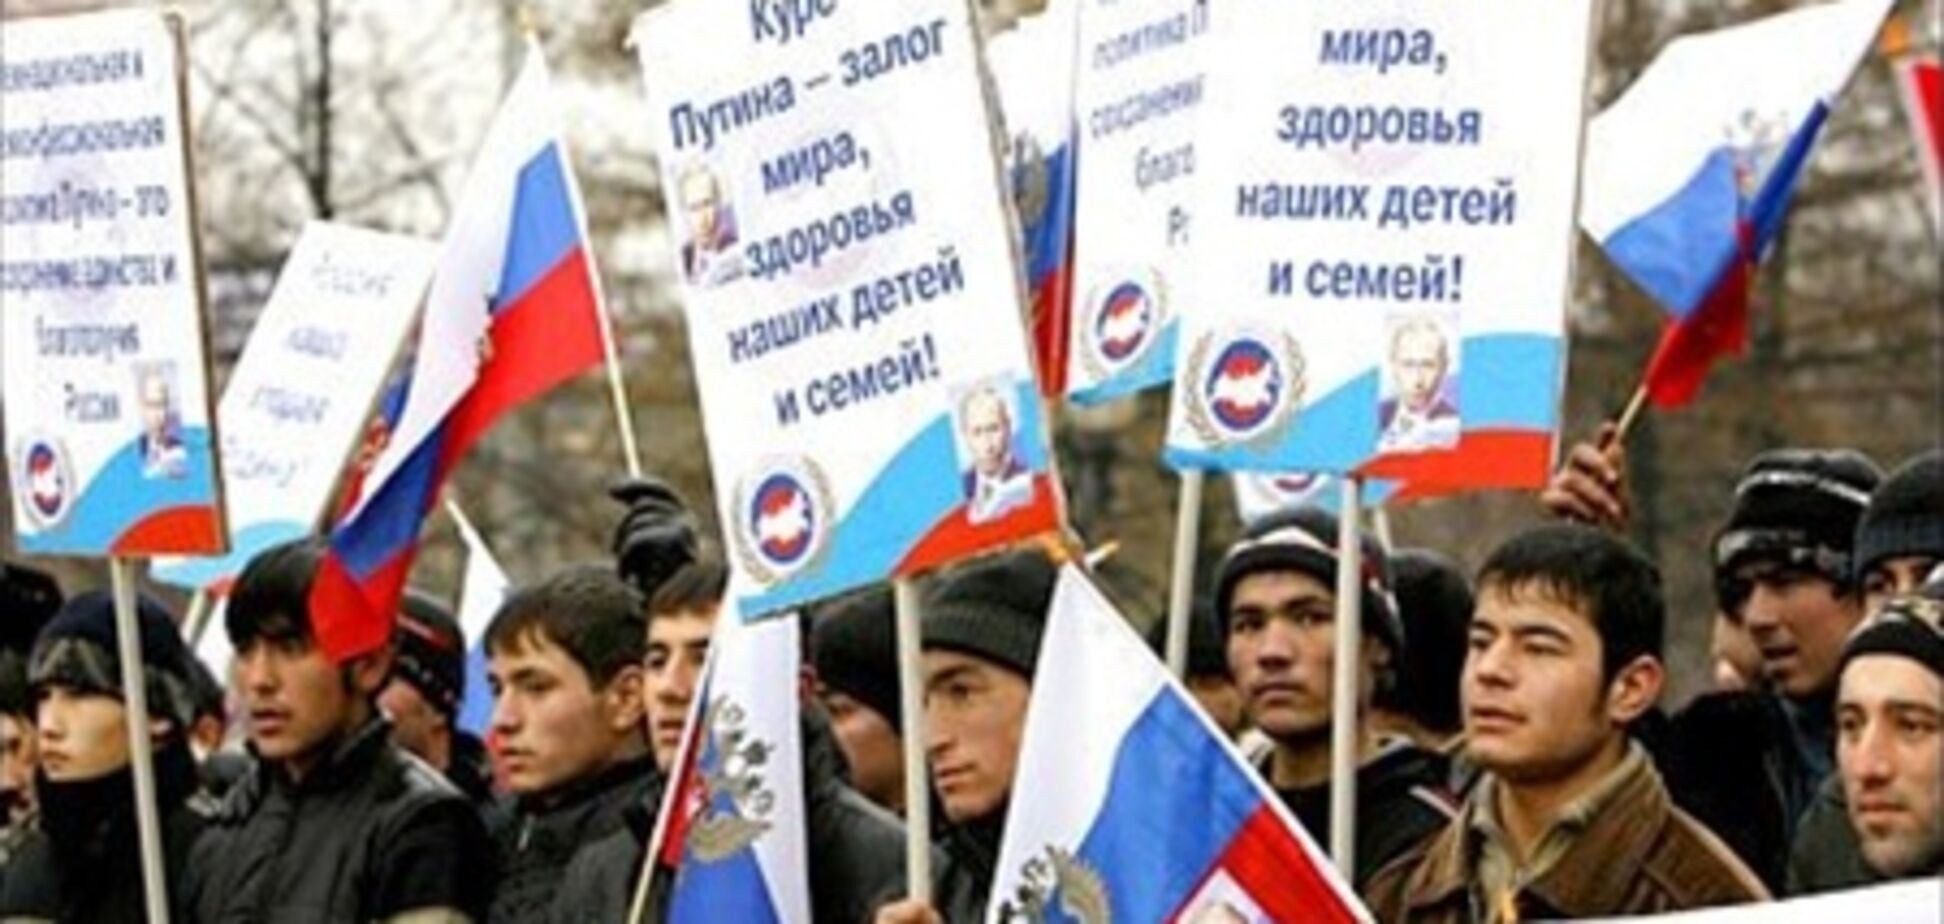 У Москві пройде мітинг прихильників влади 'Слава Росії!'